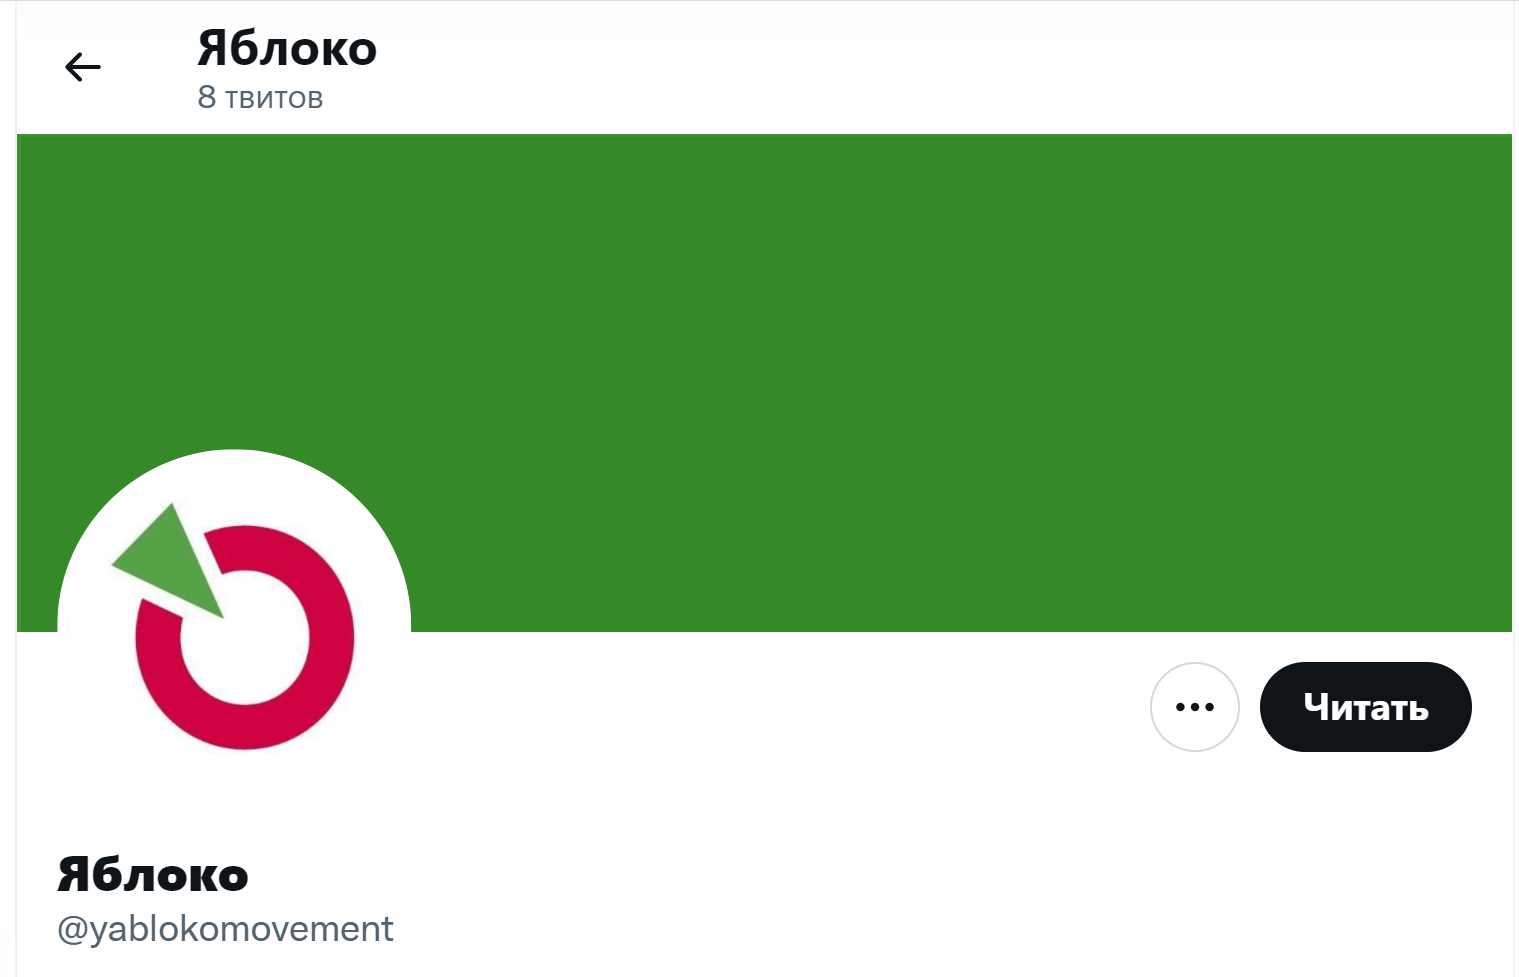 Страница движения "Яблоко" в твитере